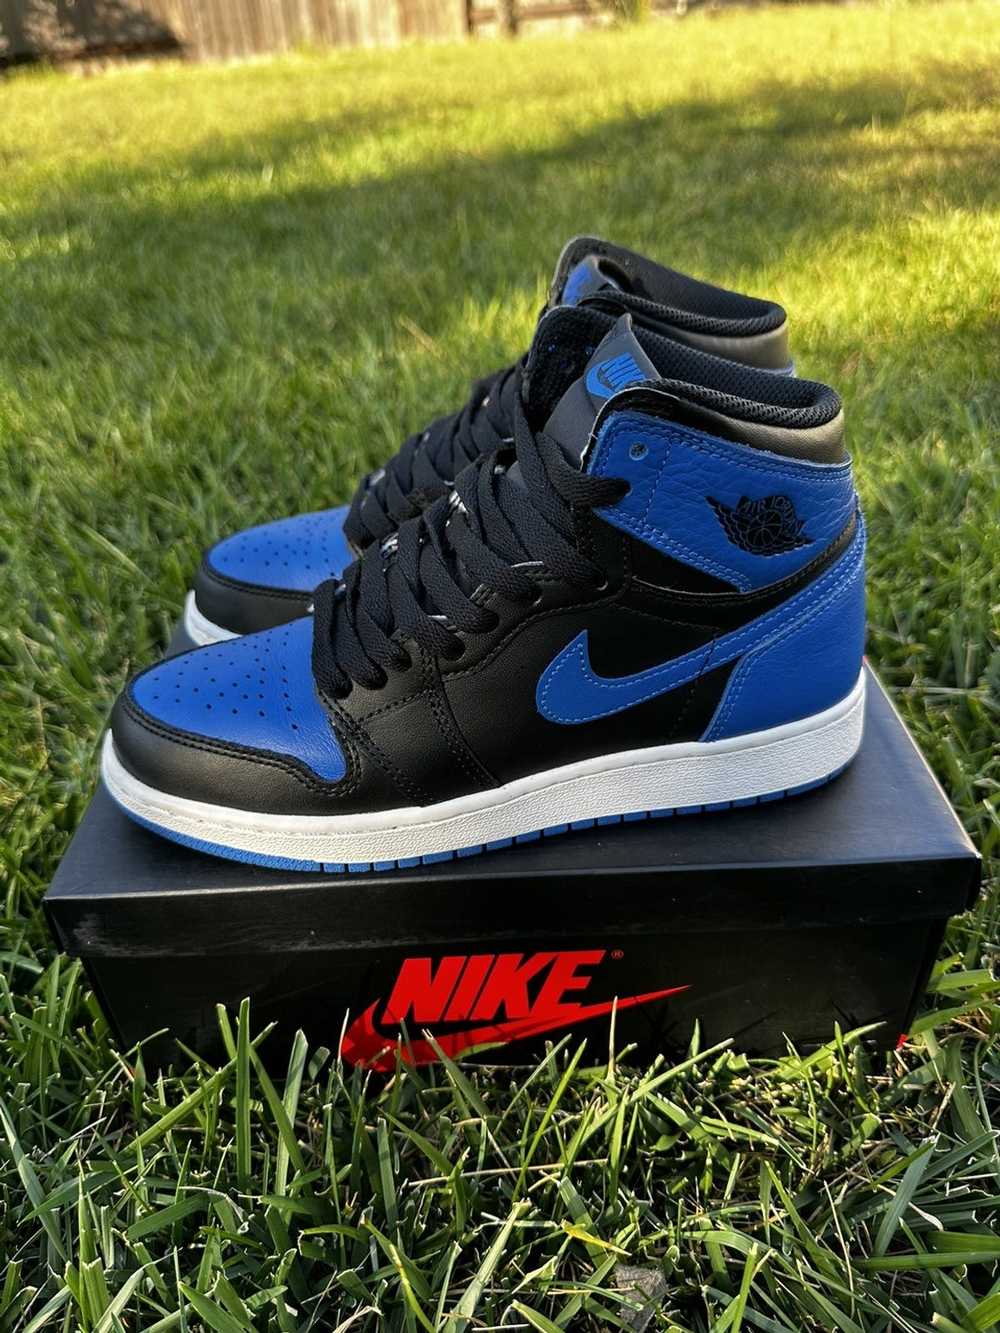 Jordan Brand × Nike Air Jordan 1 royal blue - image 2